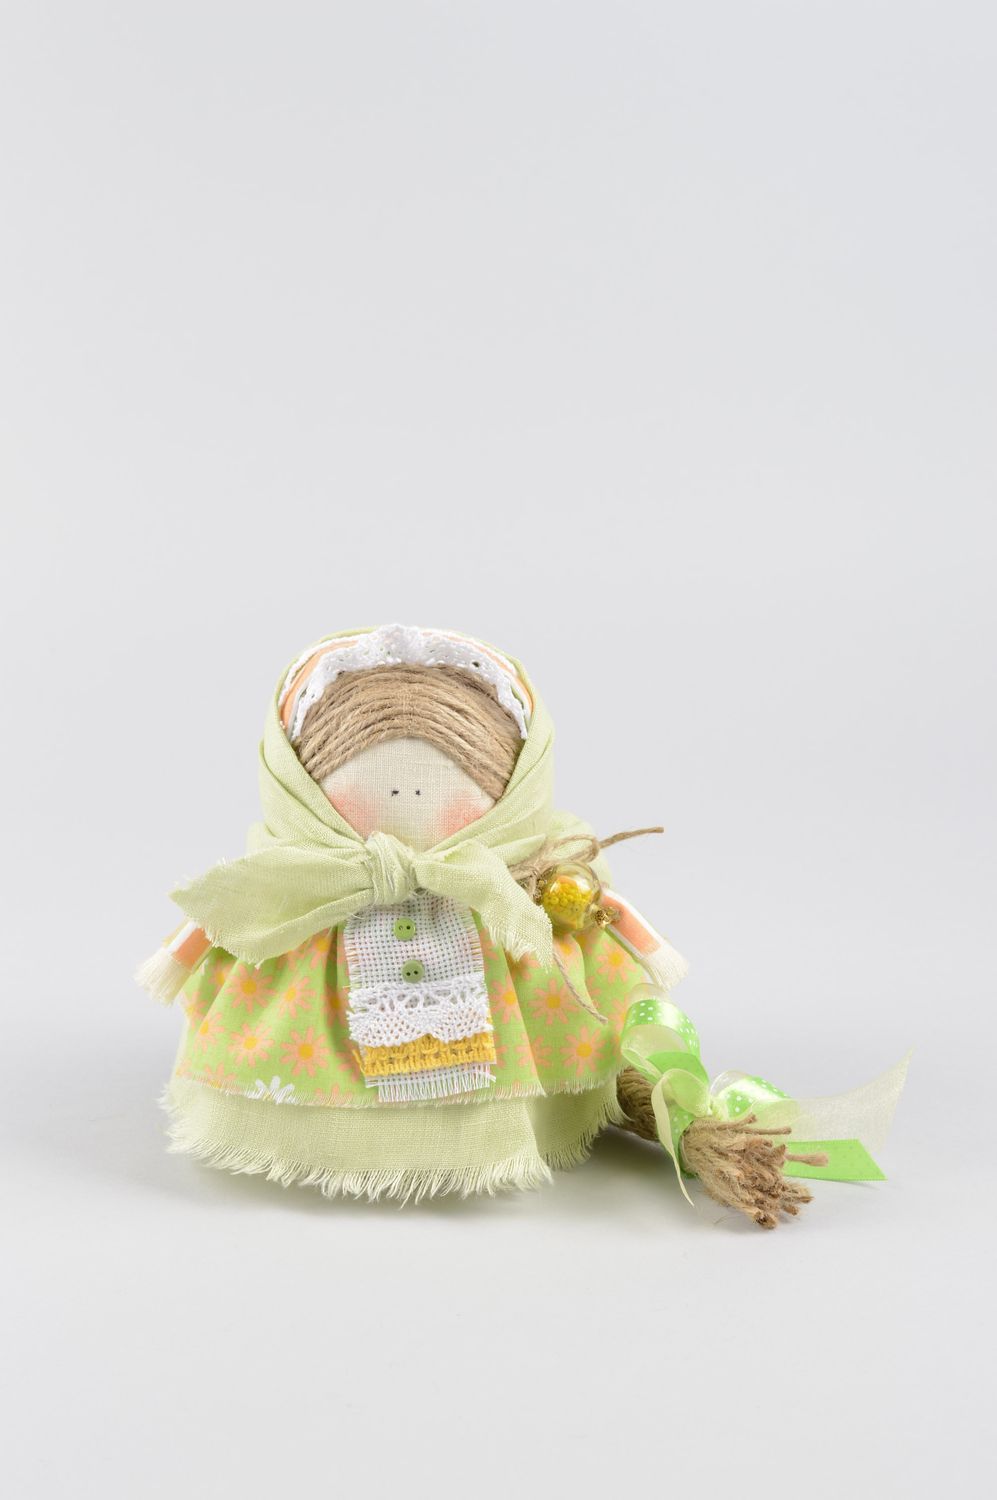 Puppe handgemacht Geschenk Idee schönes Spielzeug Ethno Deko aus Stoff foto 1